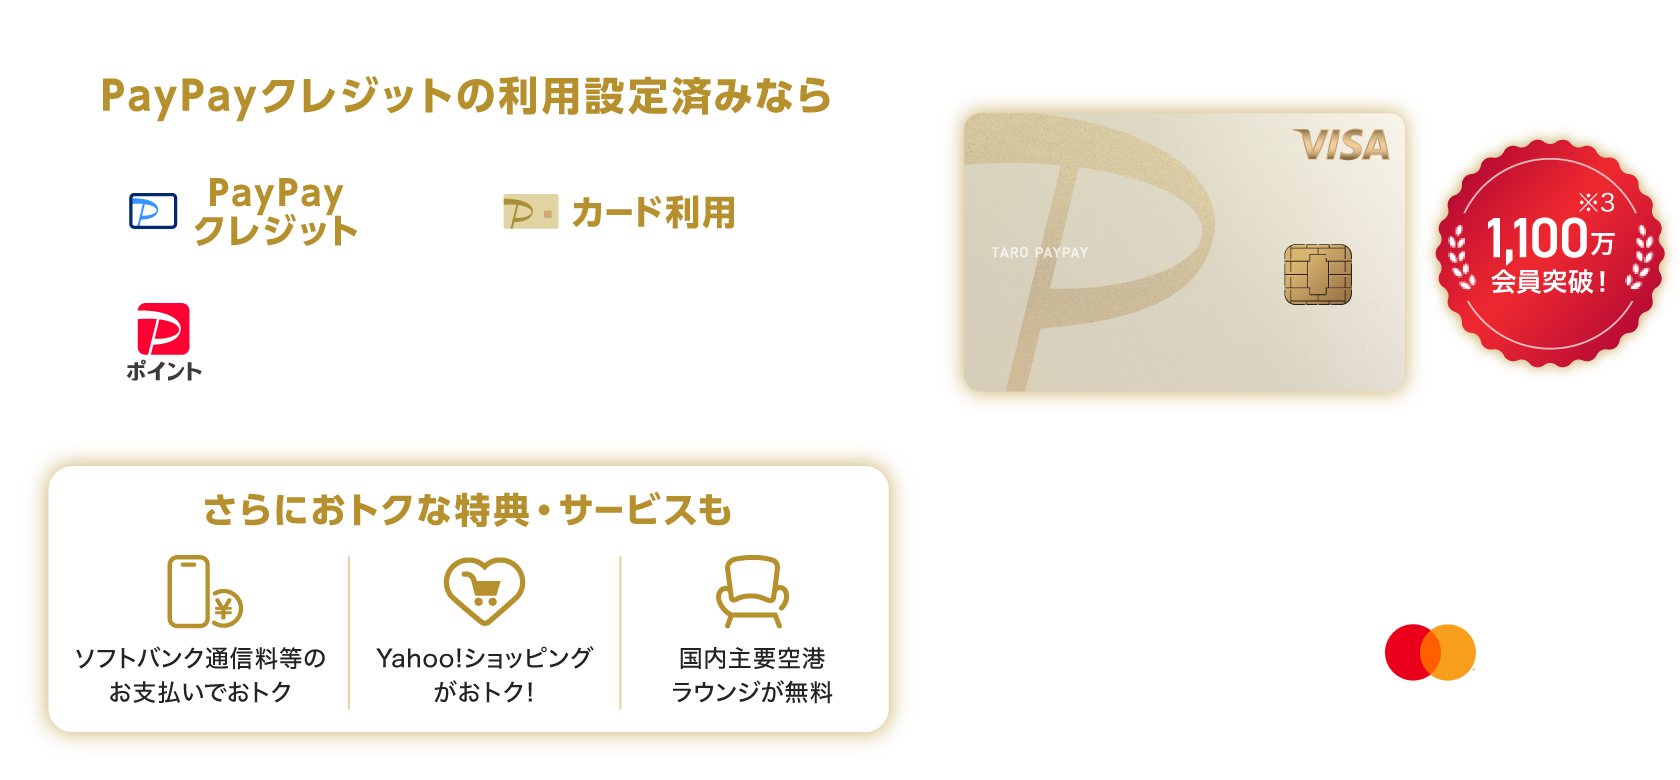 PayPayクレジットの利用設定済みなら、PayPayクレジットでもPayPayカード ゴールドでも最大2％※1PayPayポイントもらえる！※2。さらにおトクな特典・サービスも「ソフトバンク通信料等のお支払いでおトク」「Yahoo!ショッピングがおトク！」「国内主要空港ラウンジが無料」。PayPayカード ゴールド：年会費 11,000円（税込）（JCB・VISA） 1,100万回会員突破！（※3）